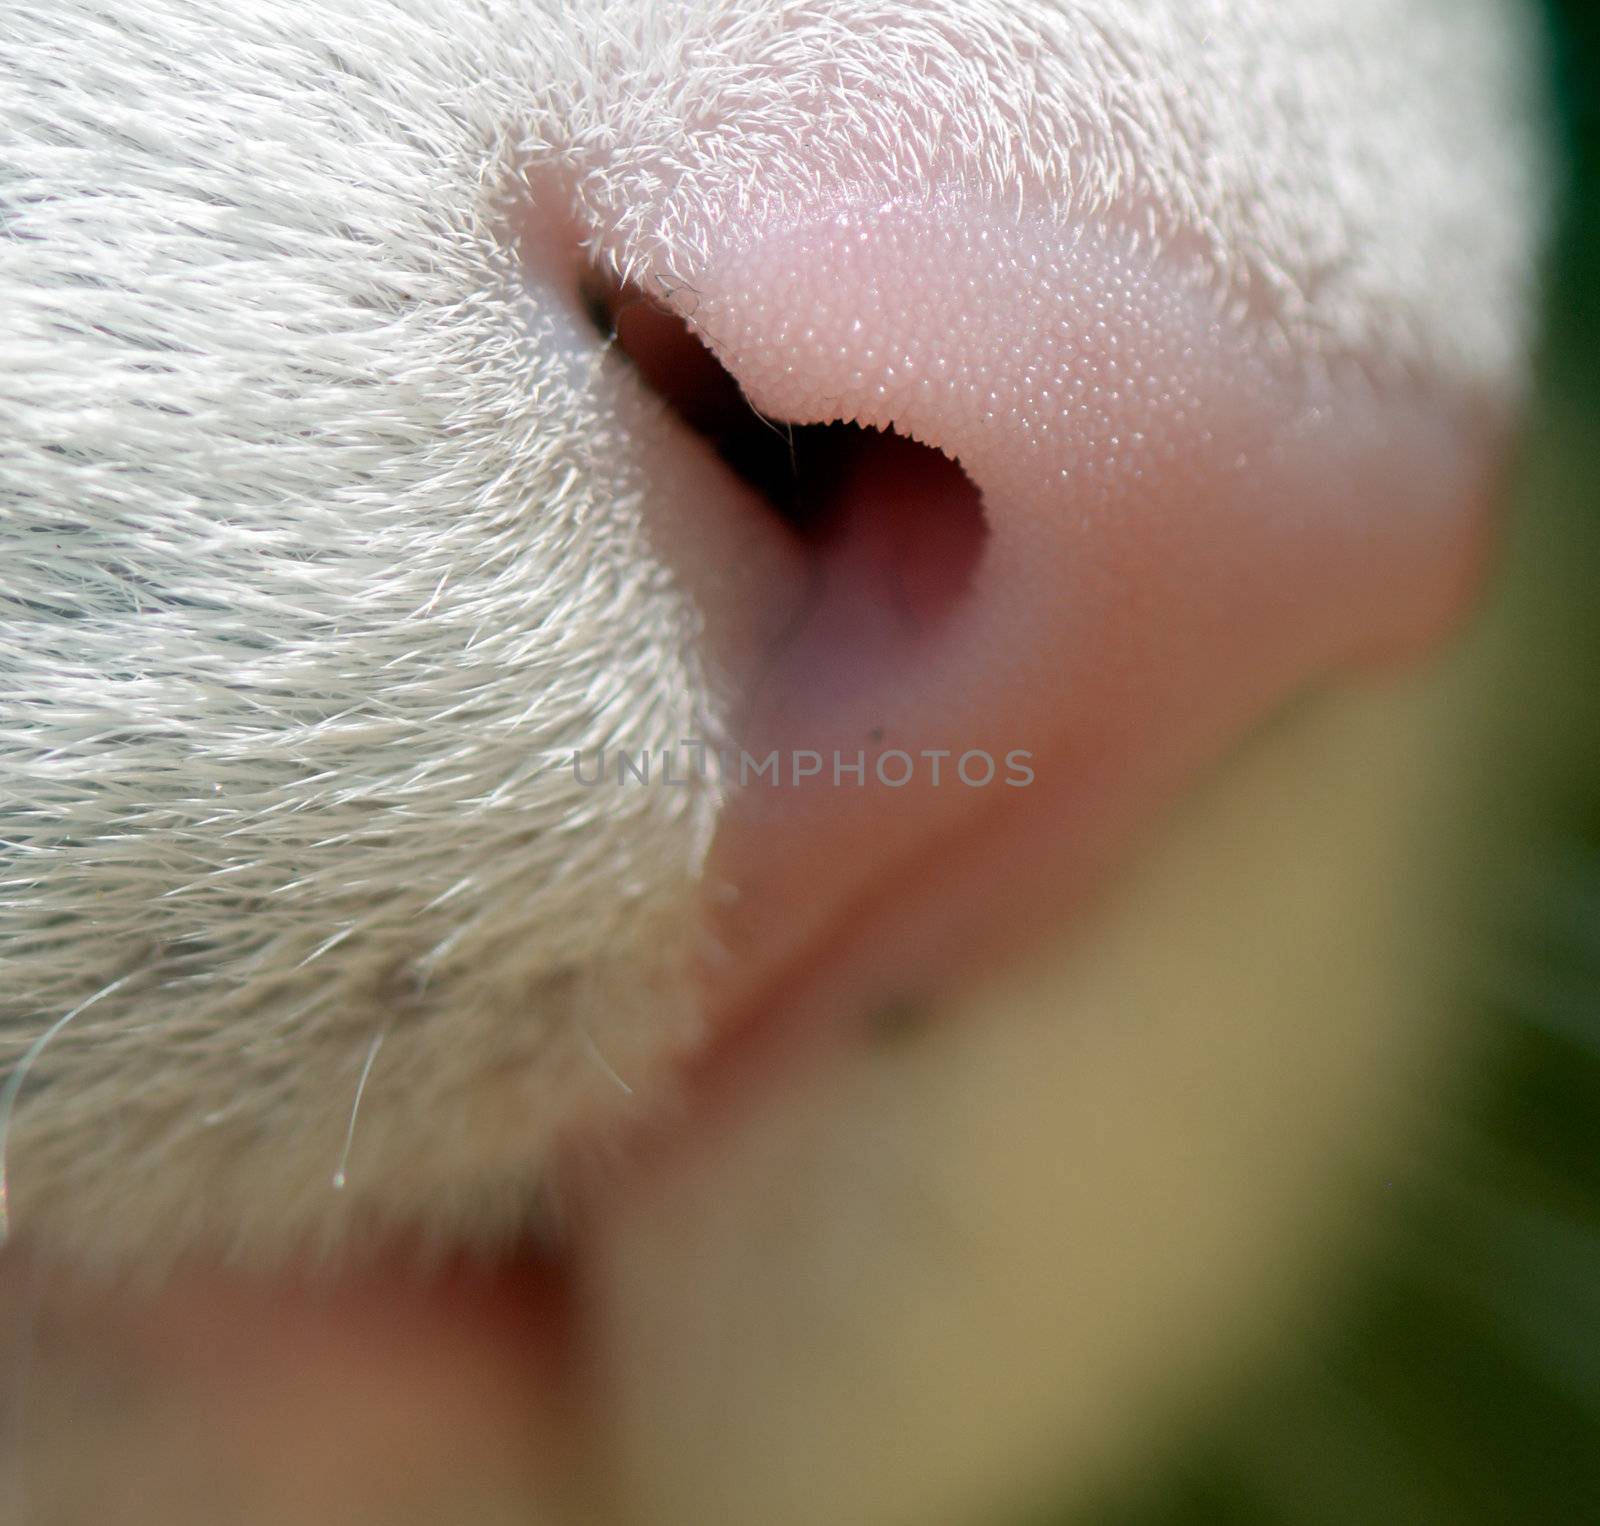 Macro shot of cat nose